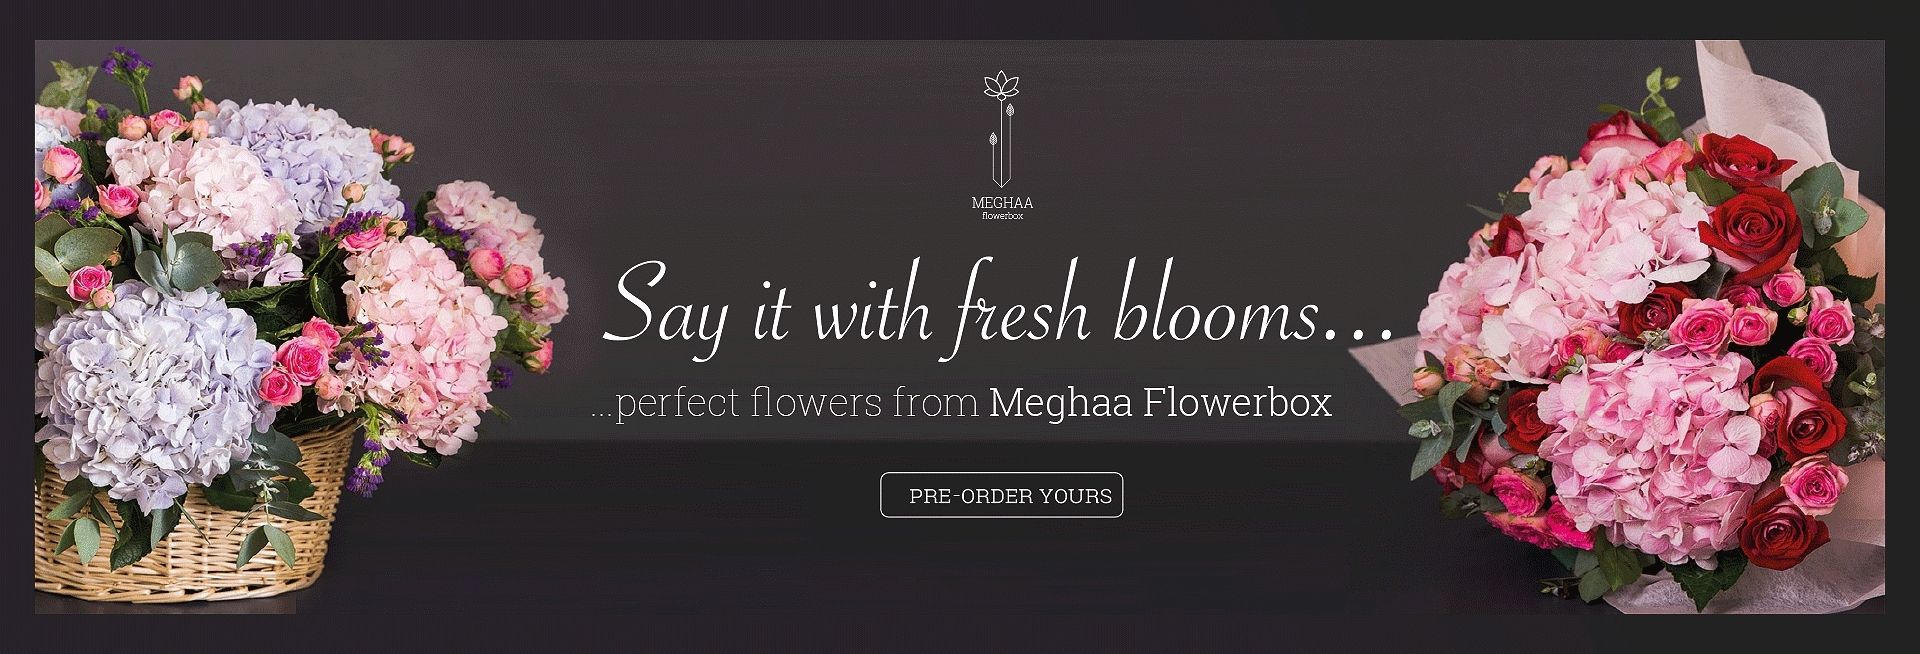 Premium Flowers